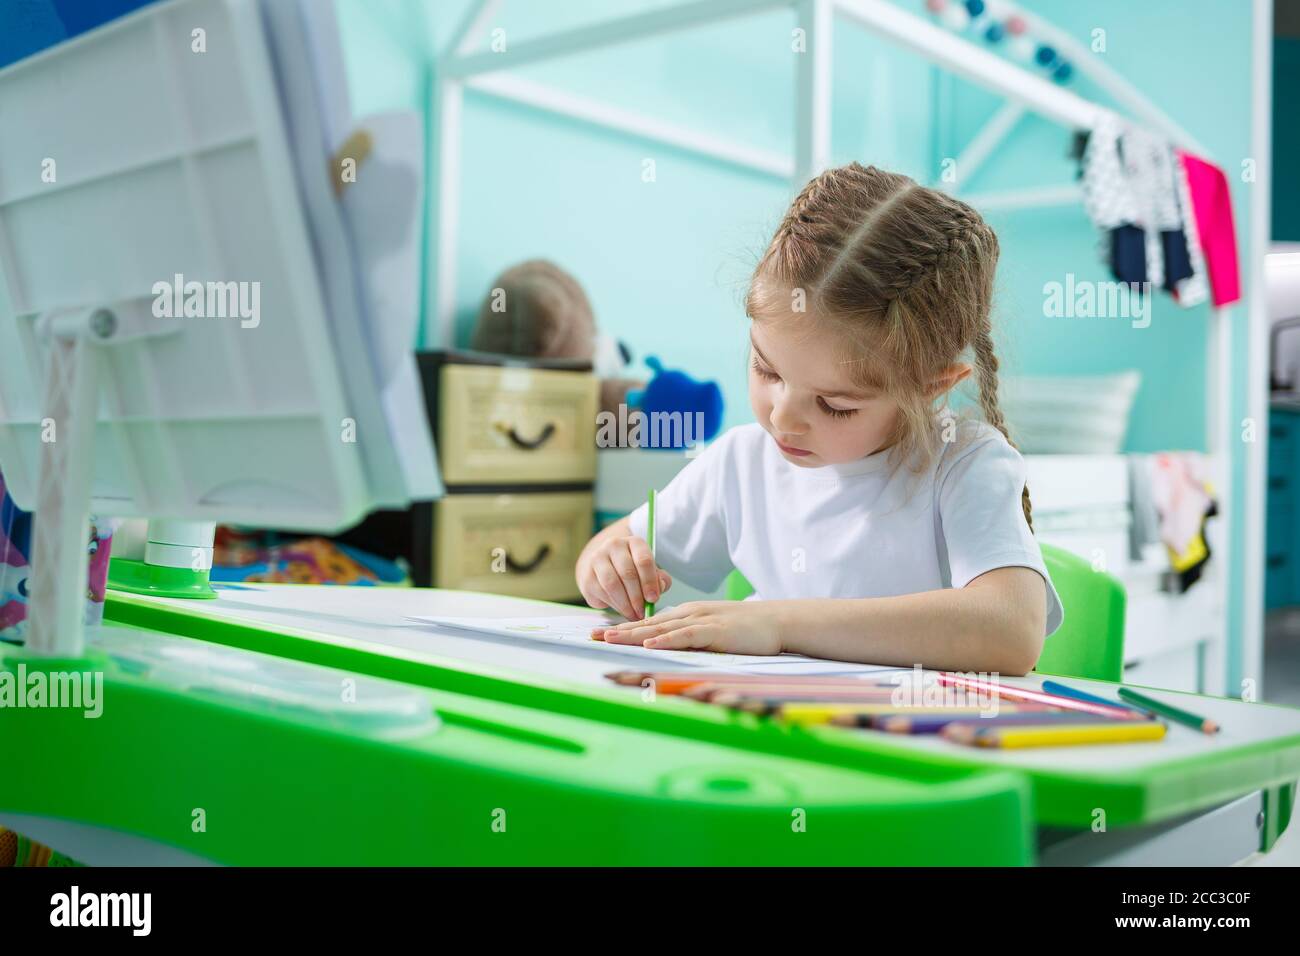 Portrait eines niedlichen kleinen Mädchen, das auf die Kamera und lächelt beim Zeichnen von Bildern oder Hausaufgaben, sitzen an einem Tisch im Inneren des Hauses Stockfoto